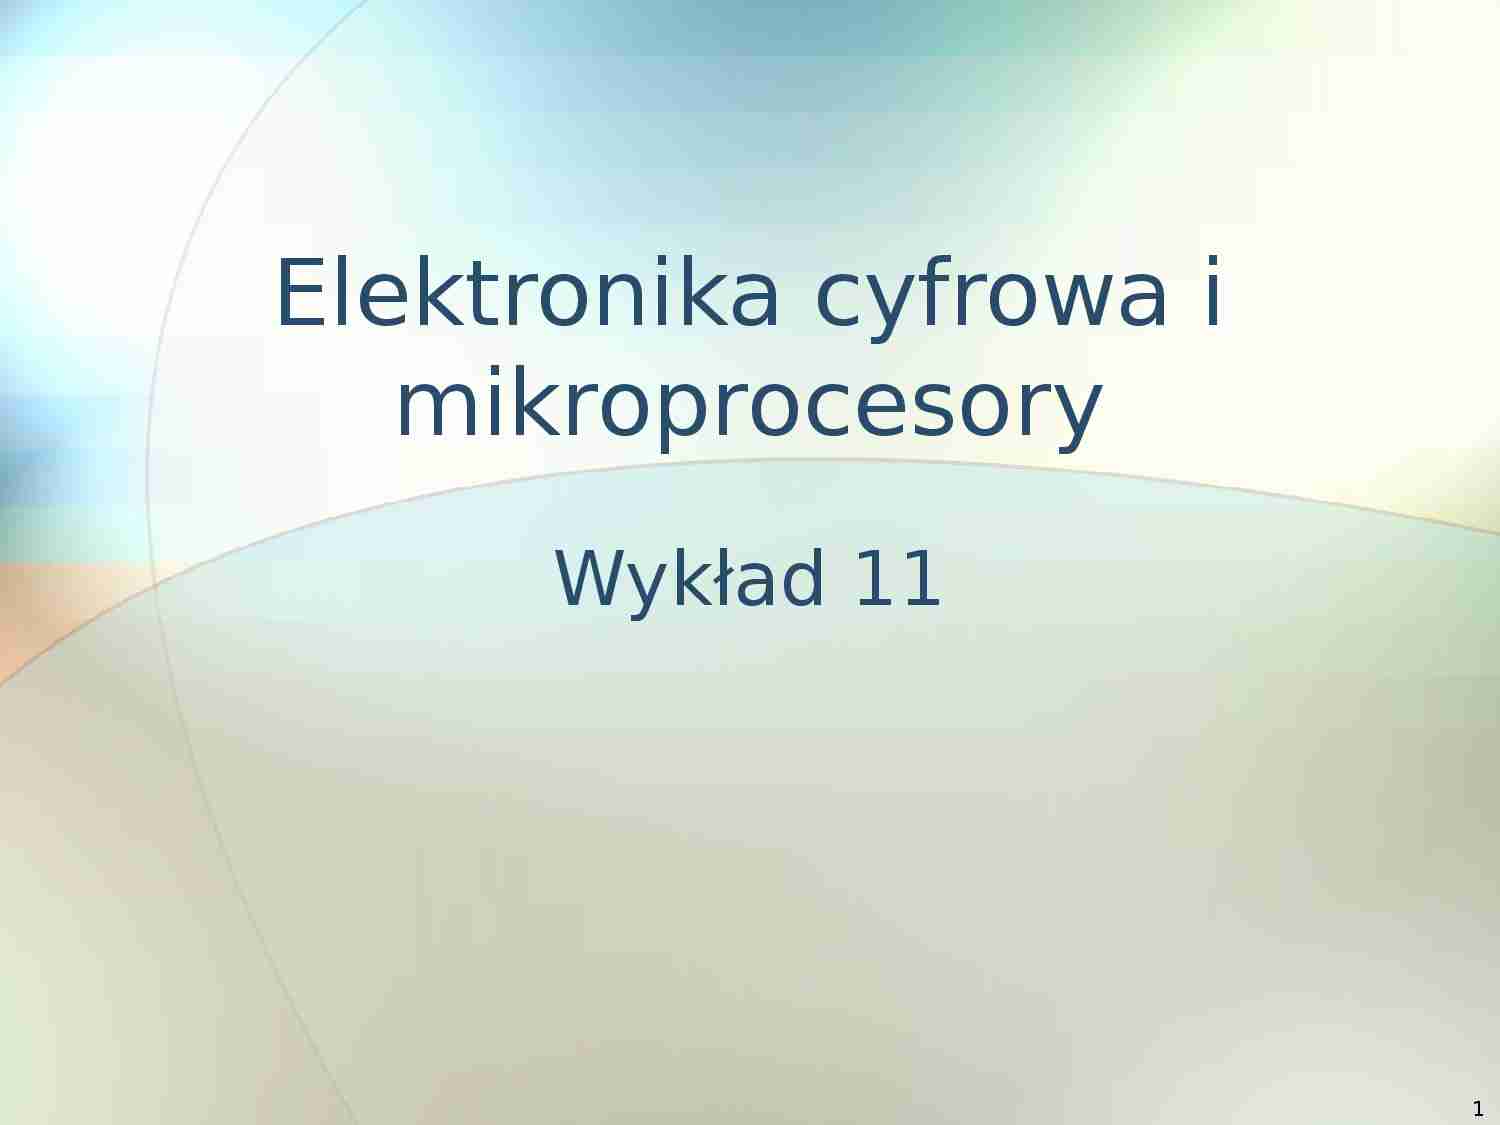 Elektronika cyfrowa i mikroprocesory - prezentacja - procesory, architektura procesorów, ilość bitów - strona 1